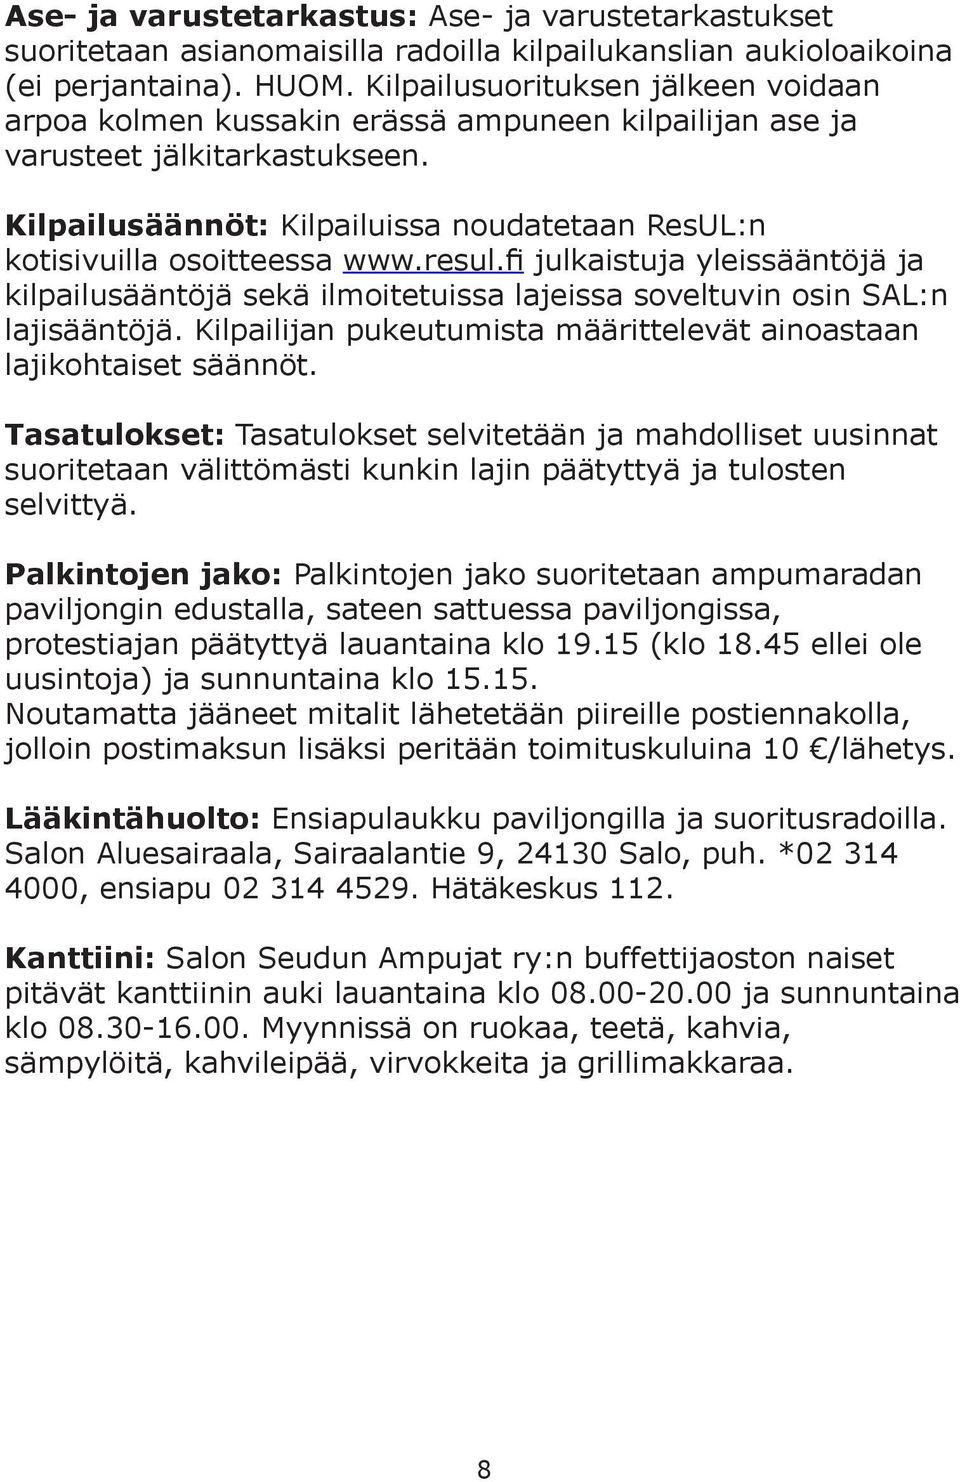 Kilpailusäännöt: Kilpailuissa noudatetaan ResUL:n kotisivuilla osoitteessa www.resul.fi julkaistuja yleissääntöjä ja kilpailusääntöjä sekä ilmoitetuissa lajeissa soveltuvin osin SAL:n lajisääntöjä.